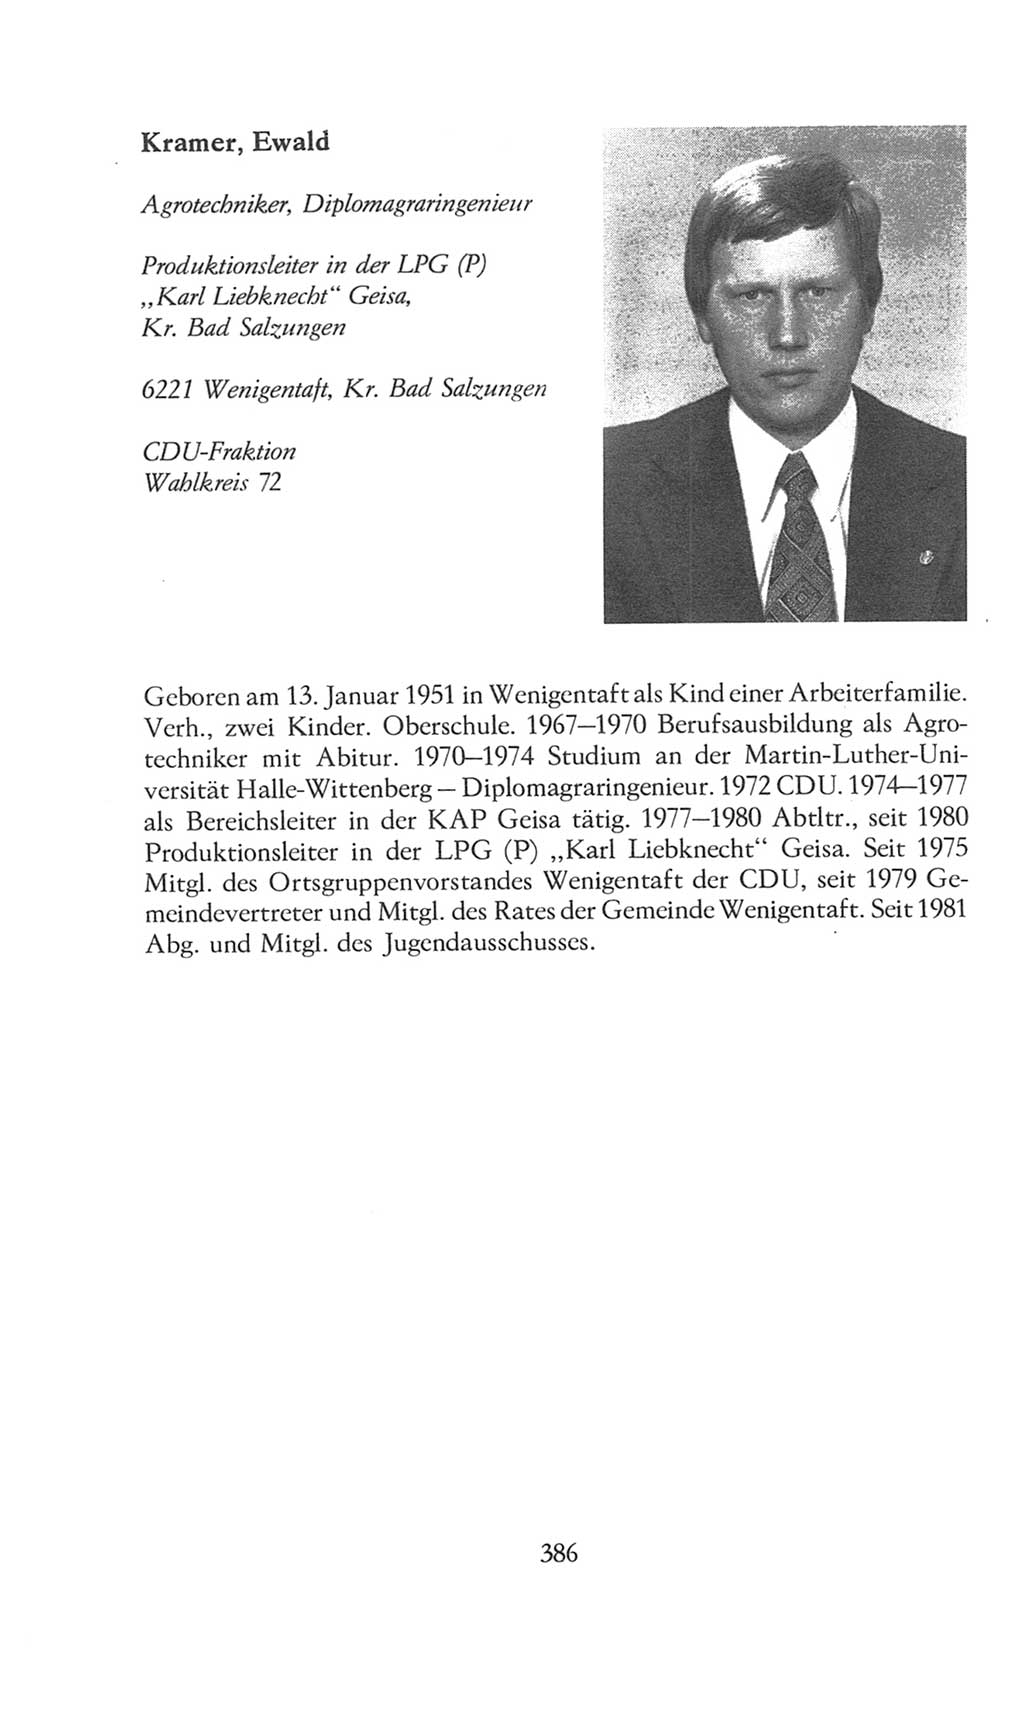 Volkskammer (VK) der Deutschen Demokratischen Republik (DDR), 8. Wahlperiode 1981-1986, Seite 386 (VK. DDR 8. WP. 1981-1986, S. 386)